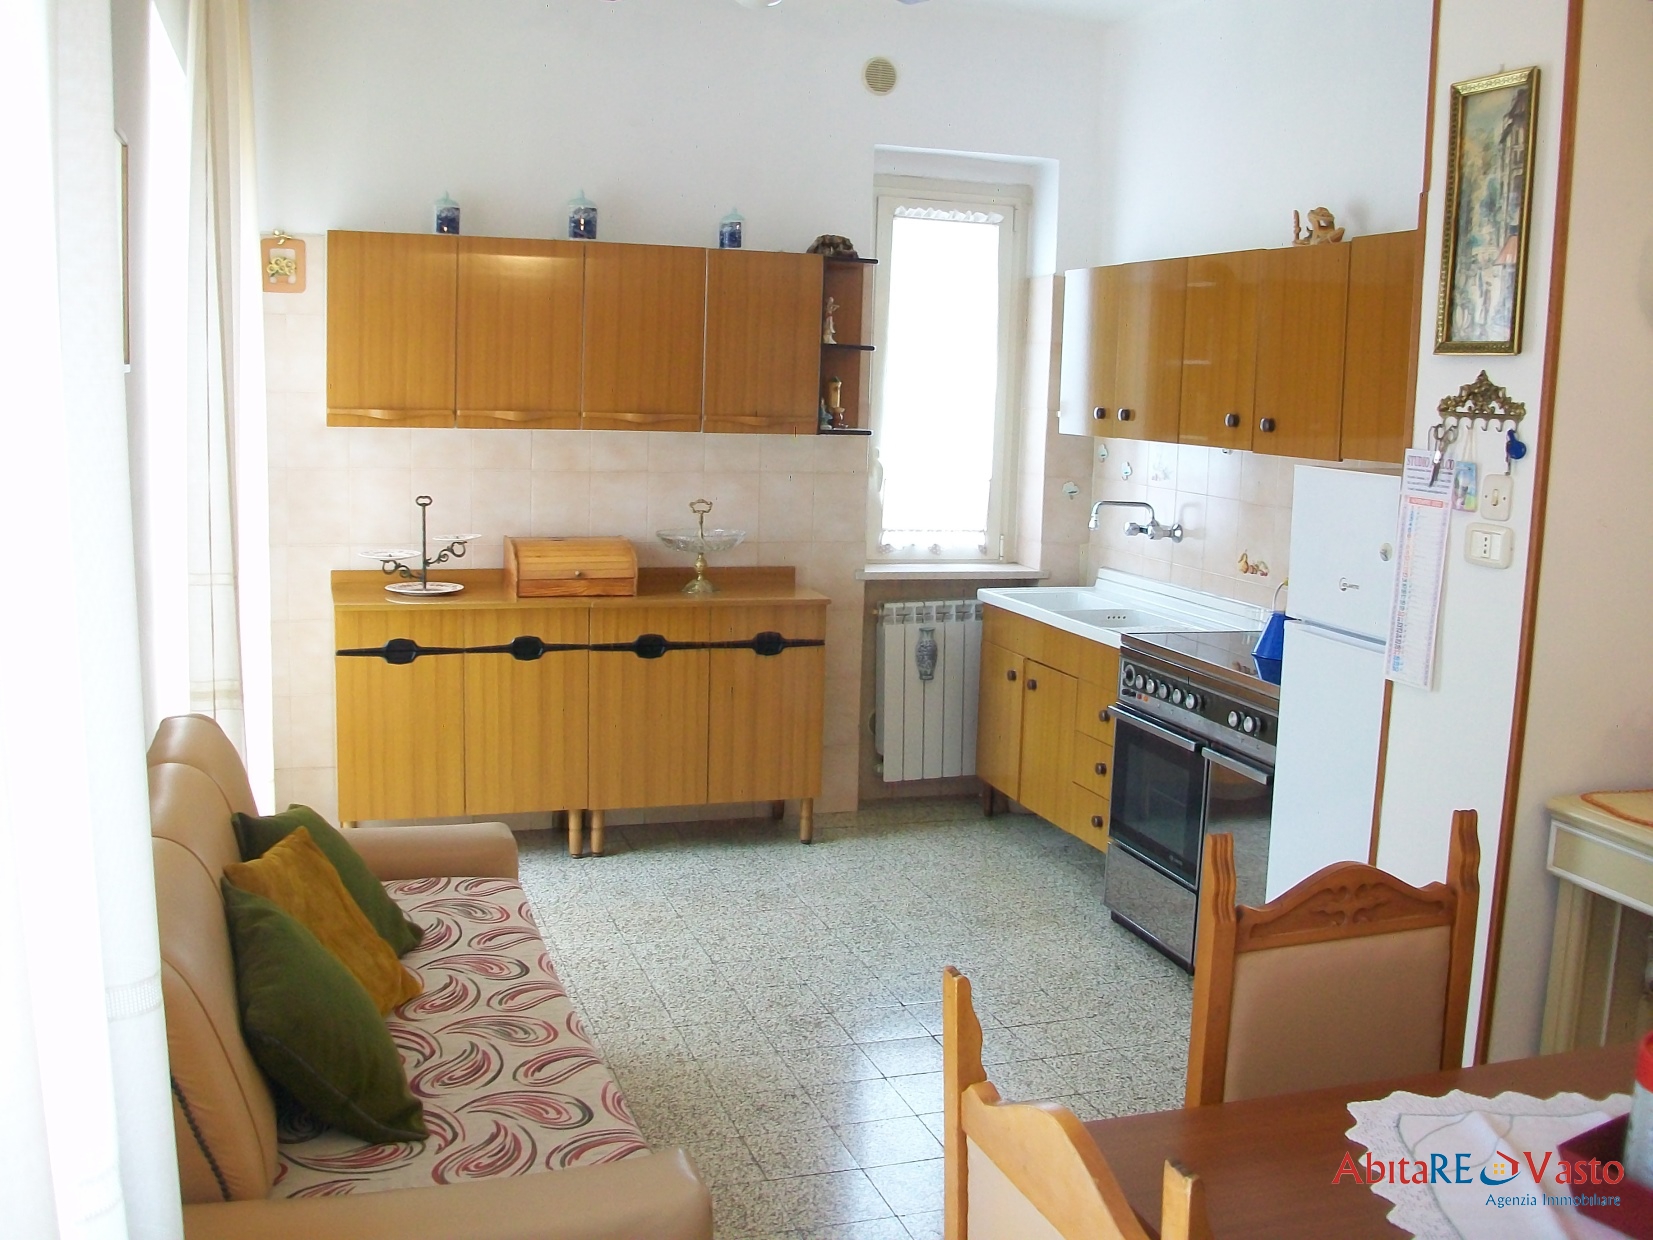 Appartamento in vendita a Pollutri, 3 locali, prezzo € 65.000 | PortaleAgenzieImmobiliari.it